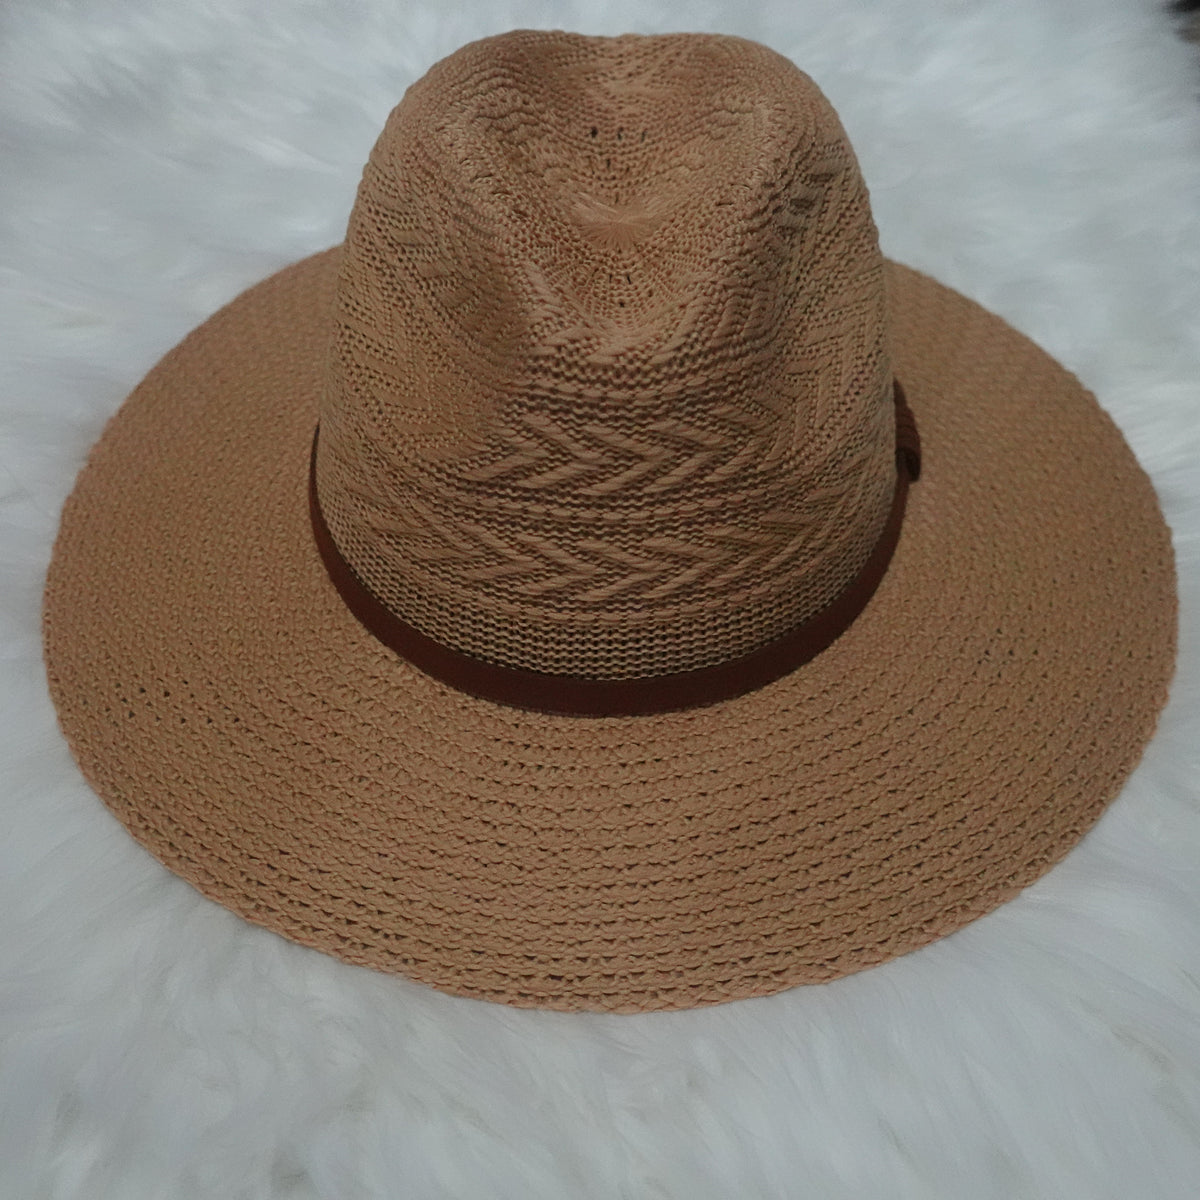 Tan Panama Hat